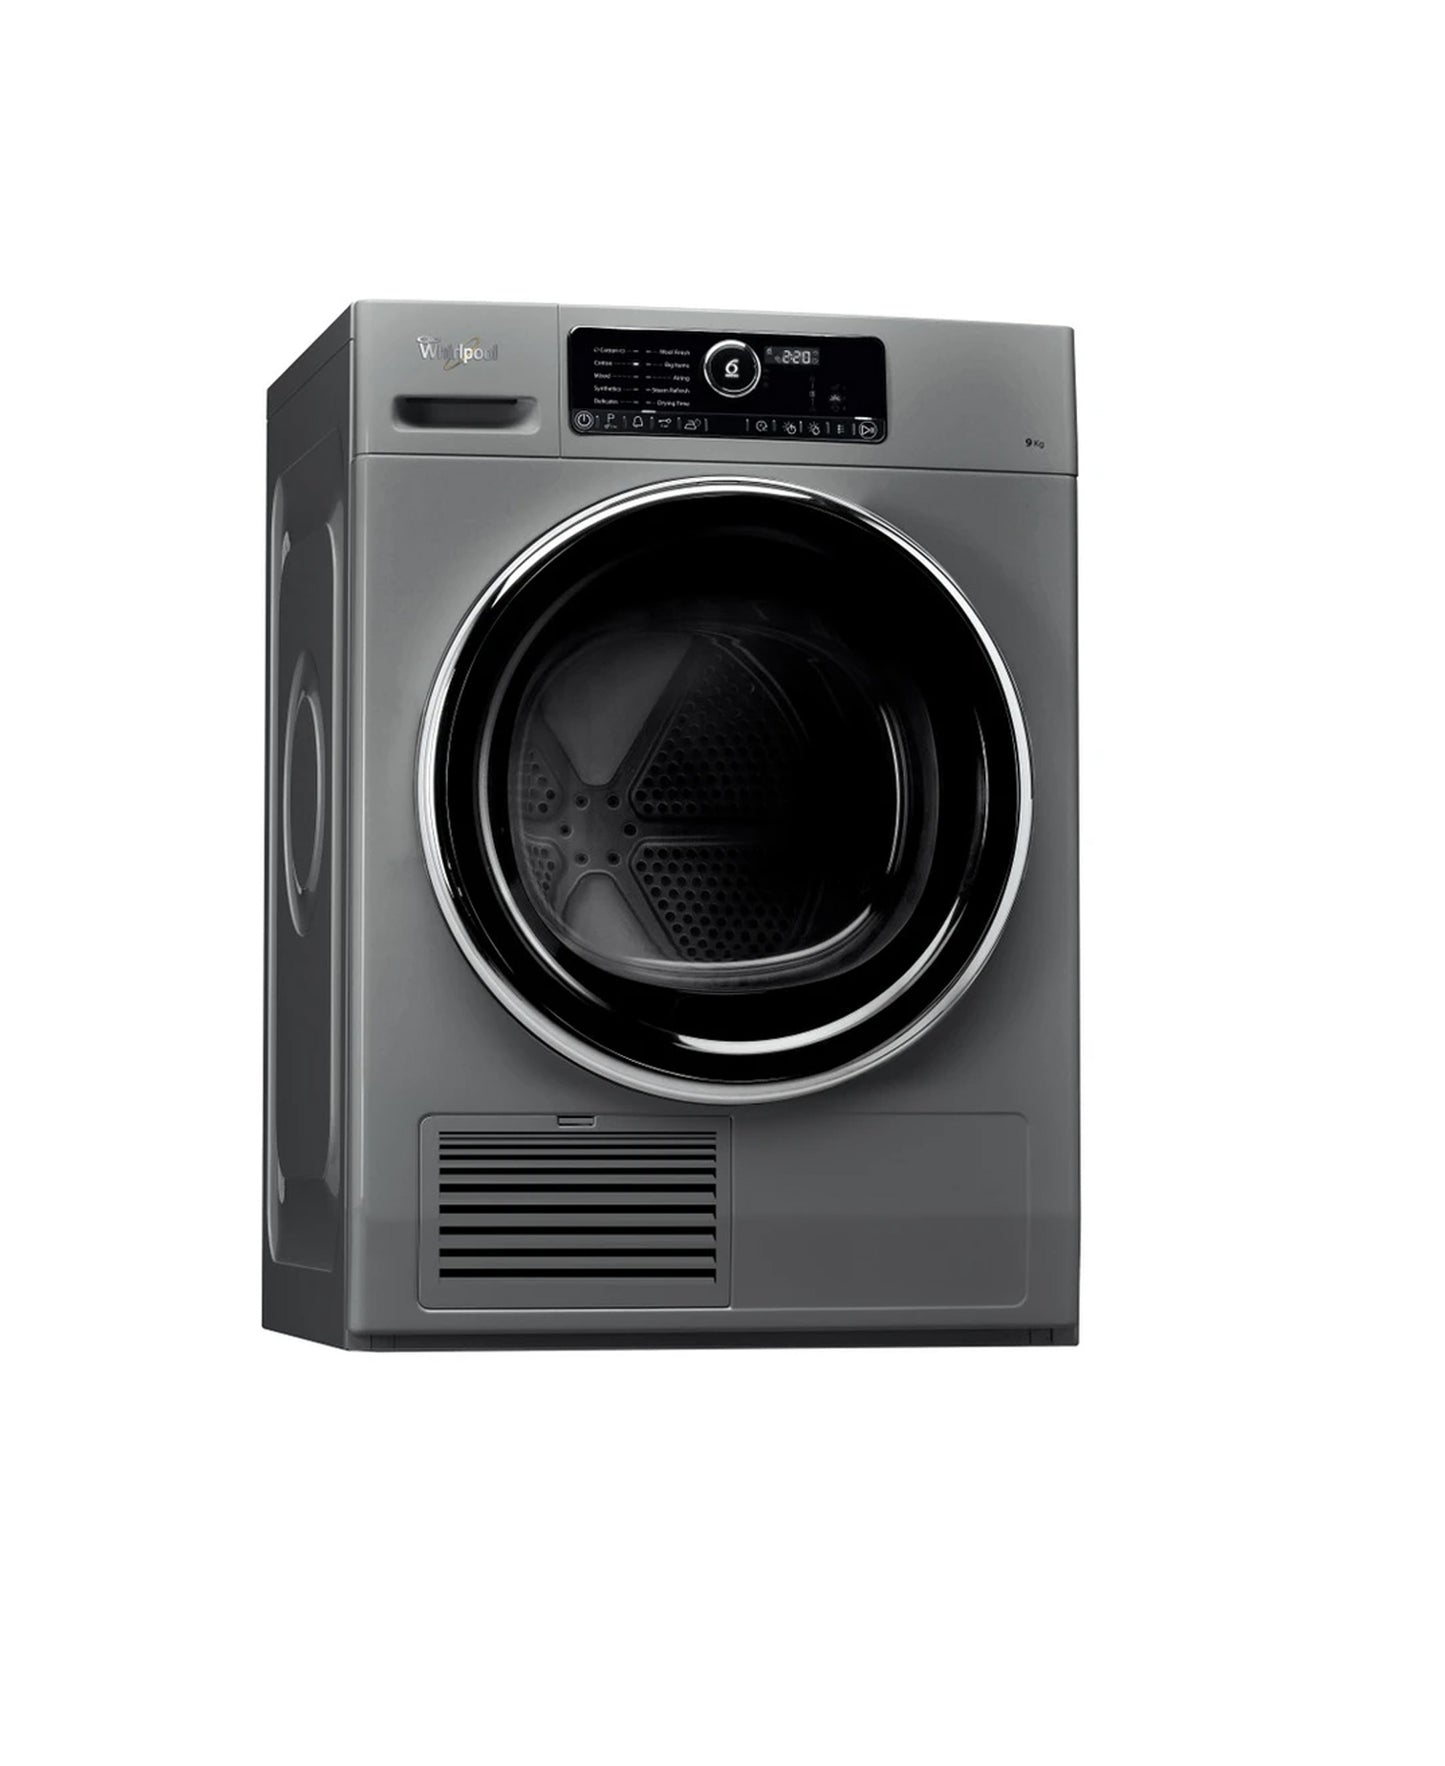 Whirlpool Condenser Tumble Dryer - Inox